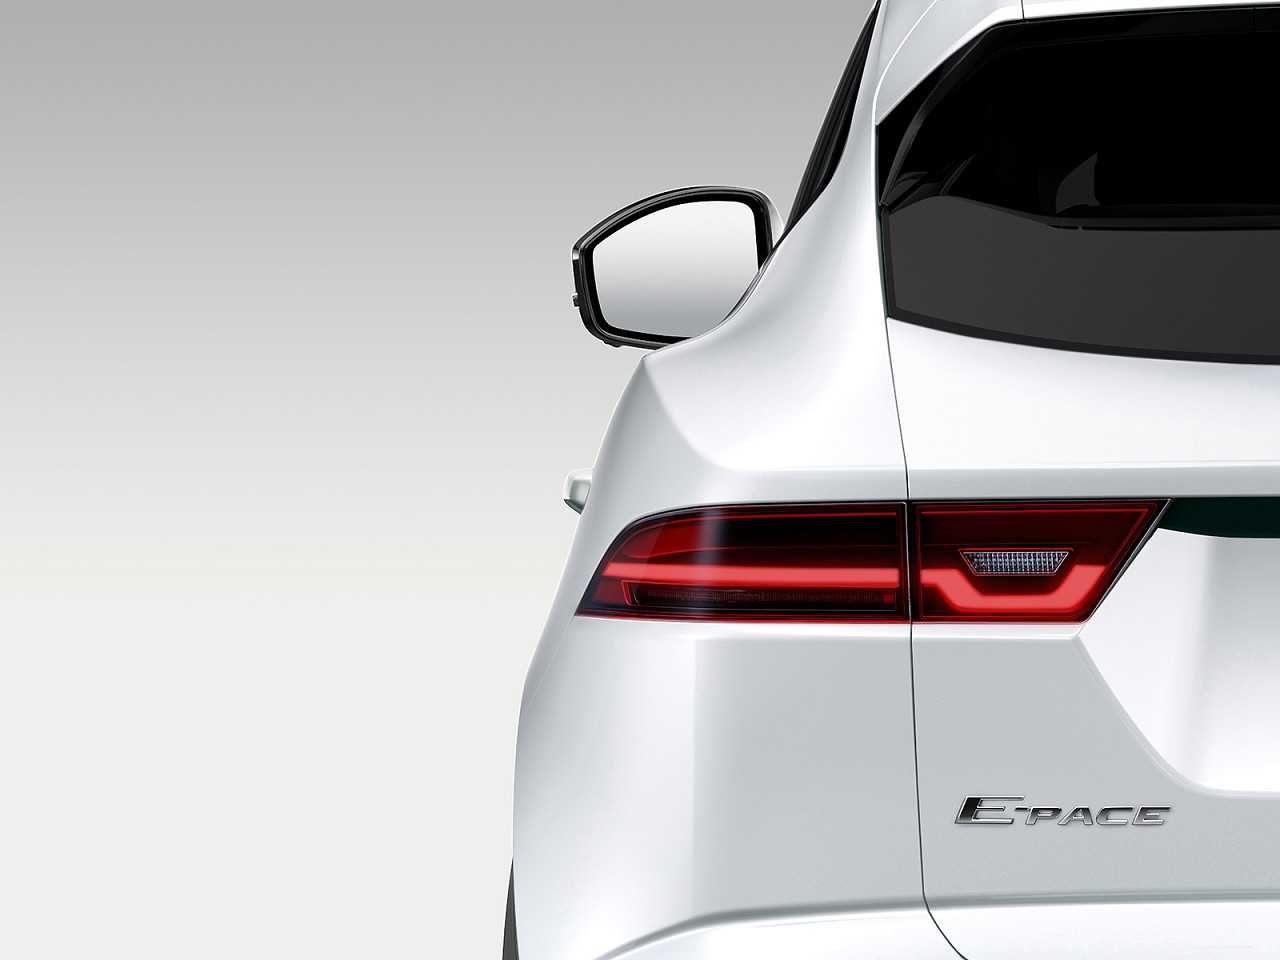 Primeira imagem oficial do Jaguar E-Pace, que chegar ao mercado global em 2018